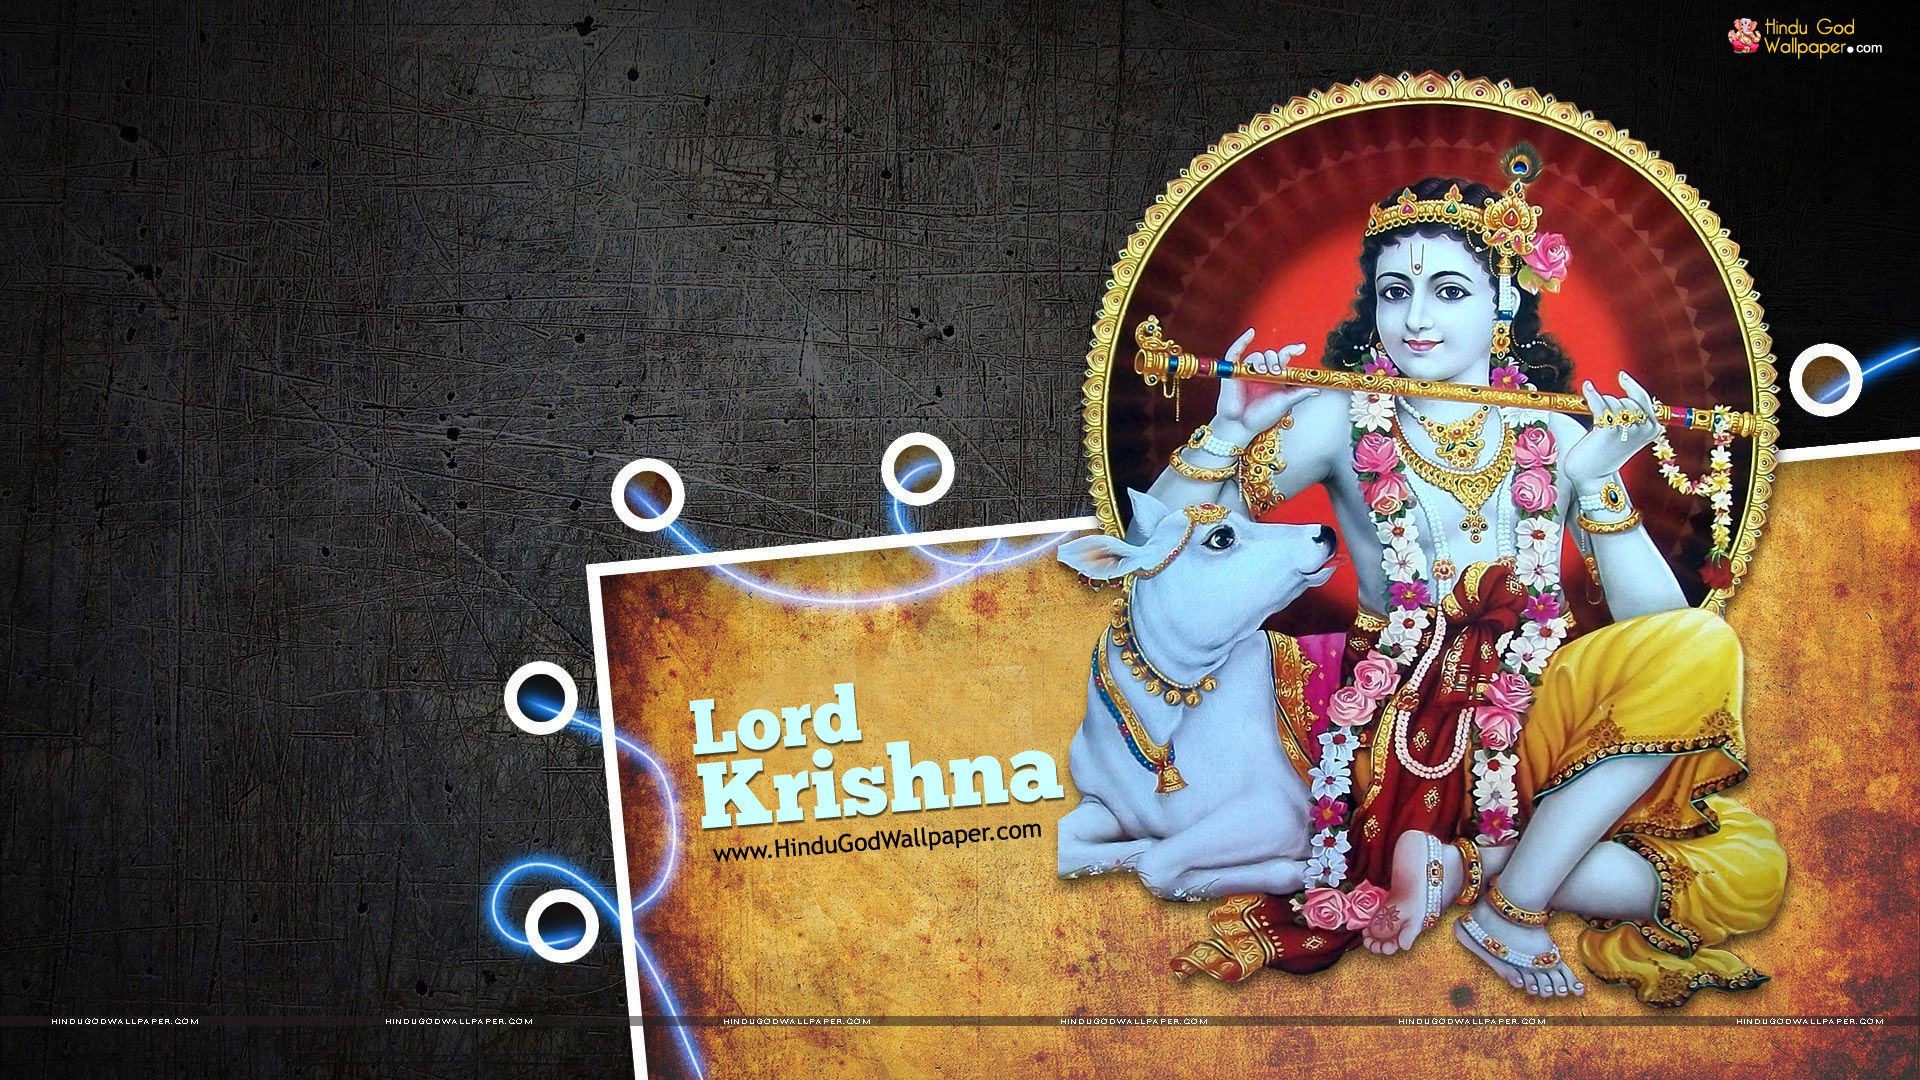 … Lord Krishna Wallpaper 1080p Hd Full Size Download.